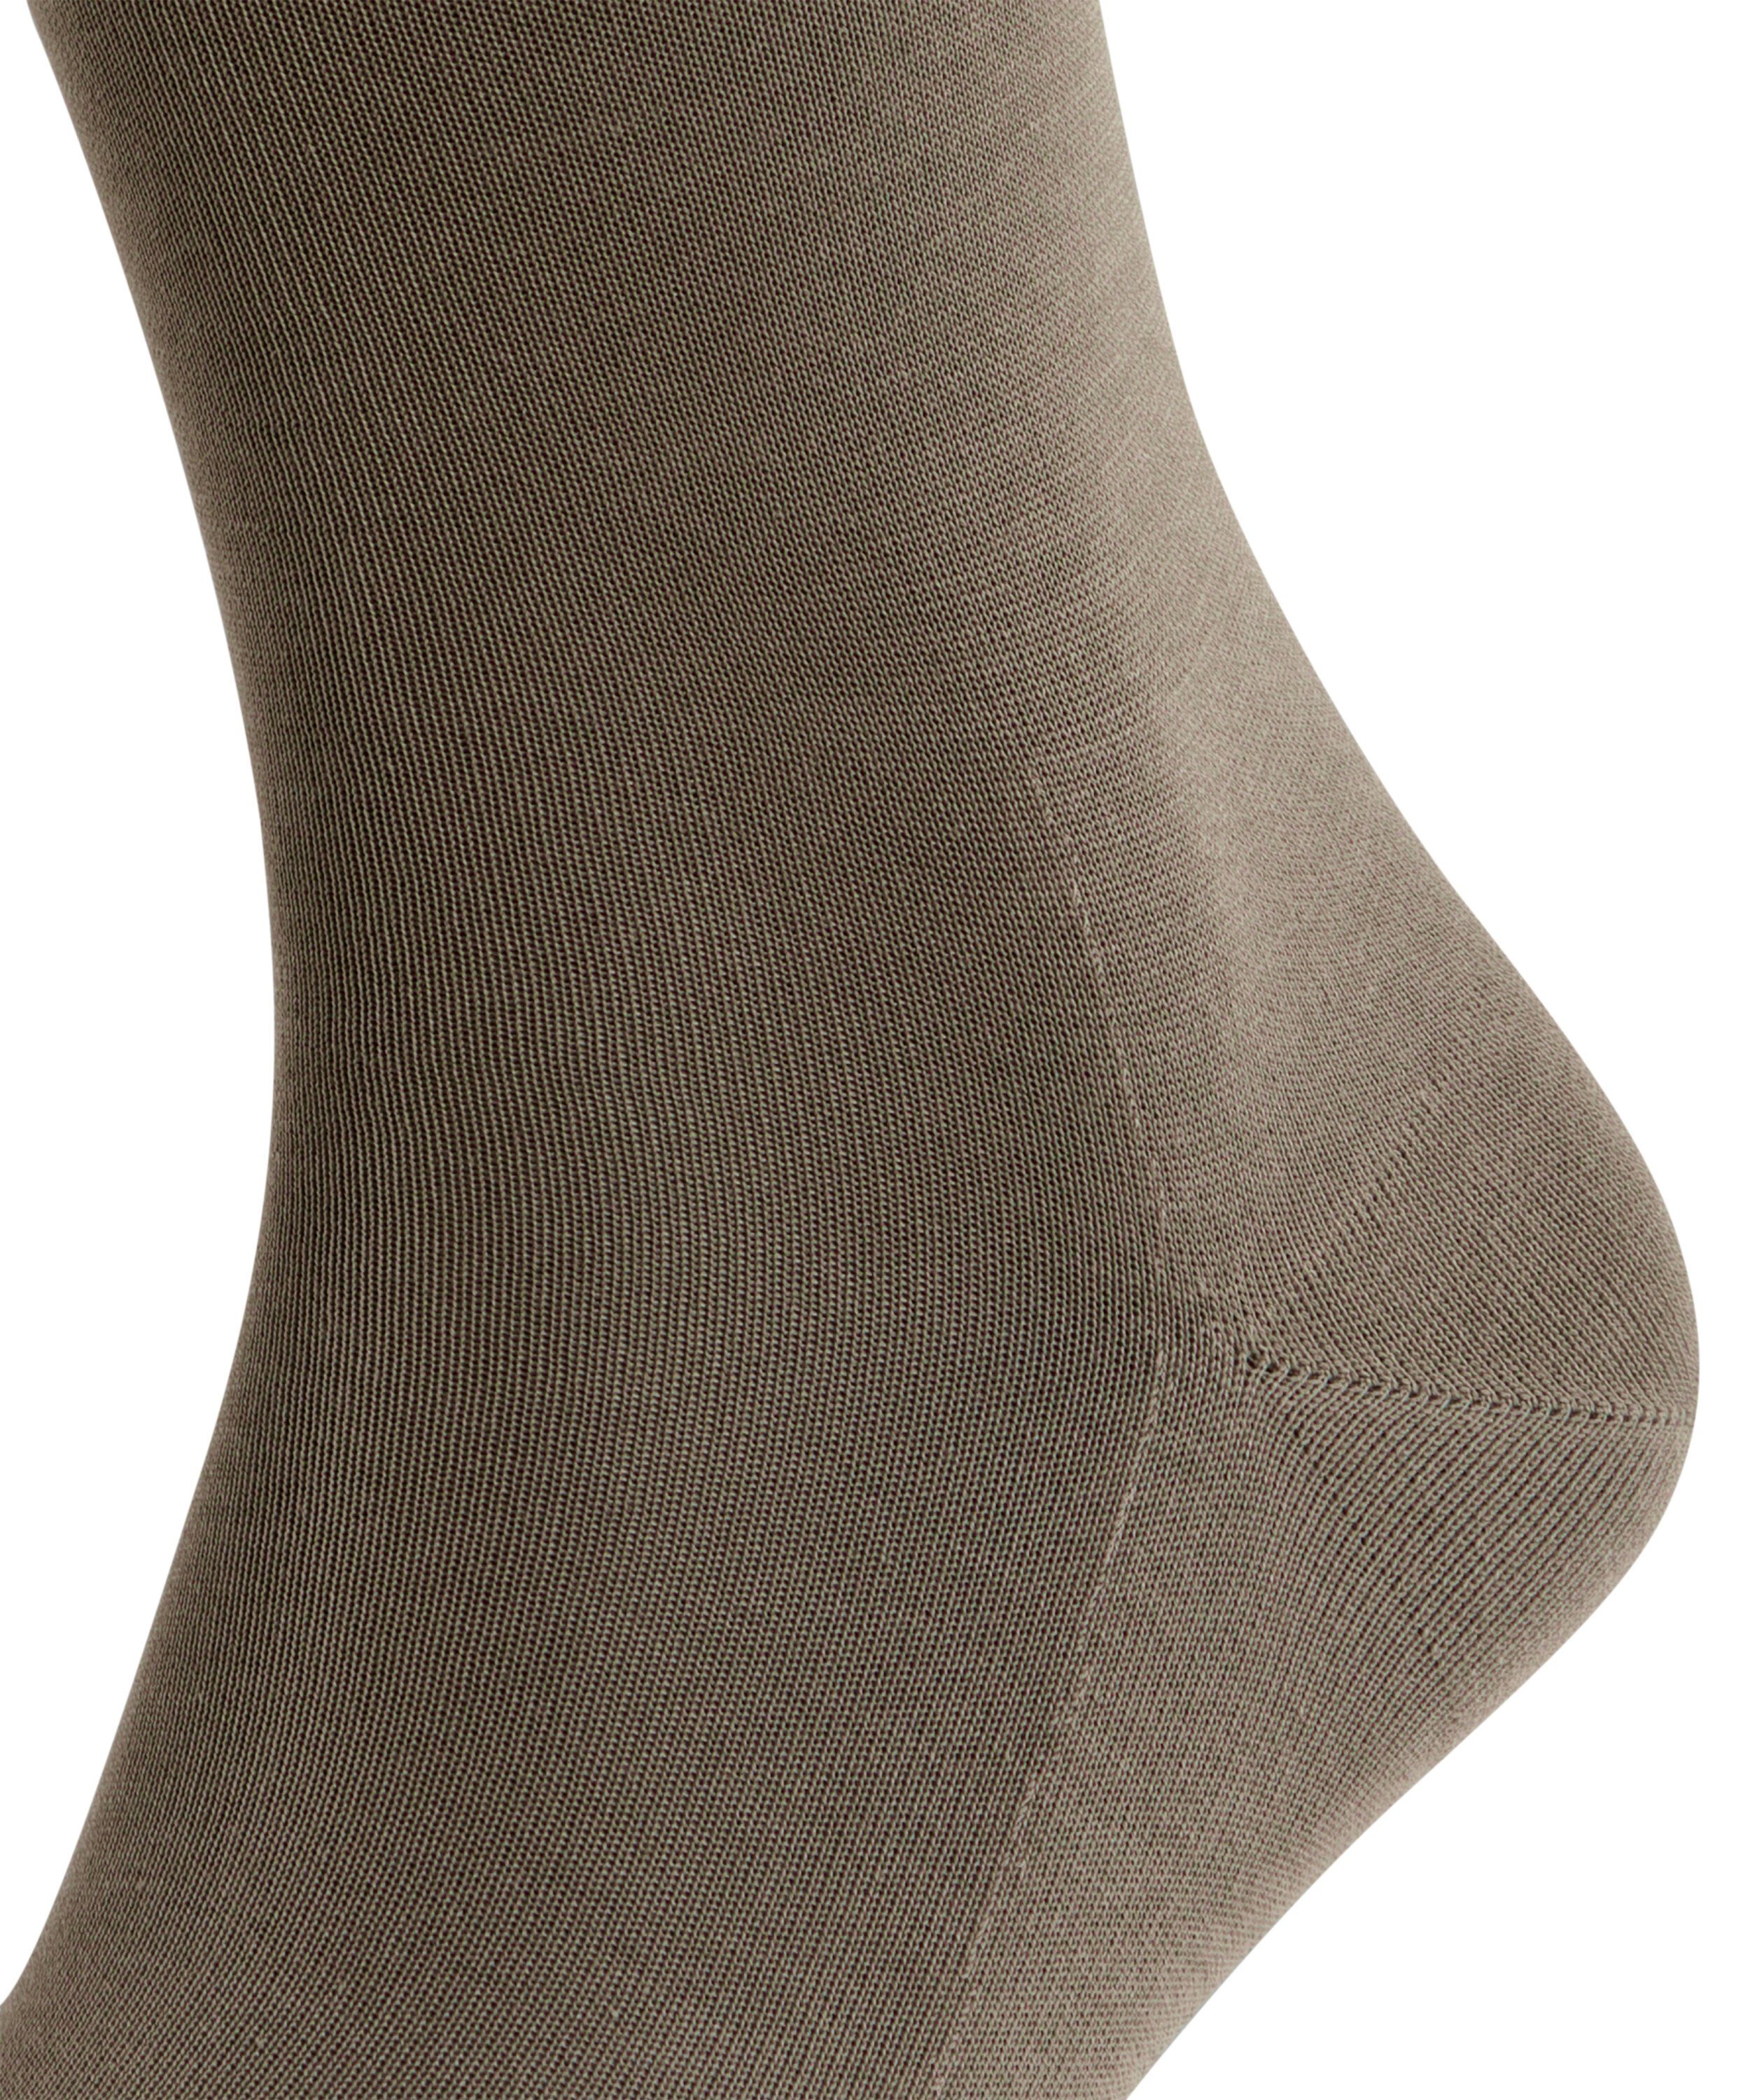 vulcano Tiago (1-Paar) FALKE (3920) Socken